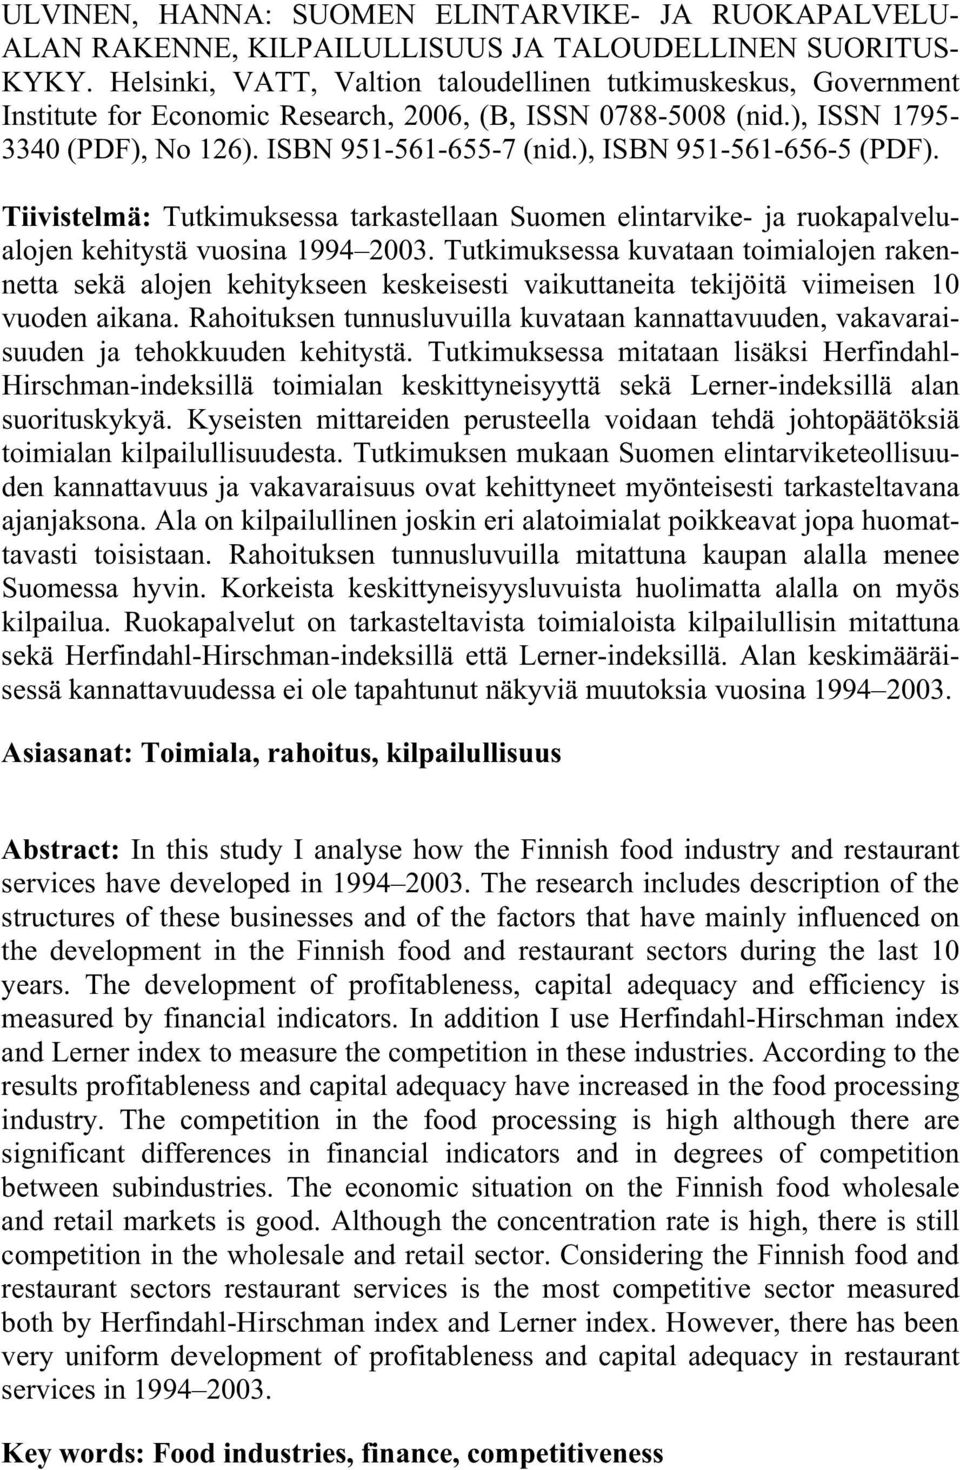 ), ISBN 951-561-656-5 (PDF). Tiivistelmä: Tutkimuksessa tarkastellaan Suomen elintarvike- ja ruokapalvelualojen kehitystä vuosina 1994 23.